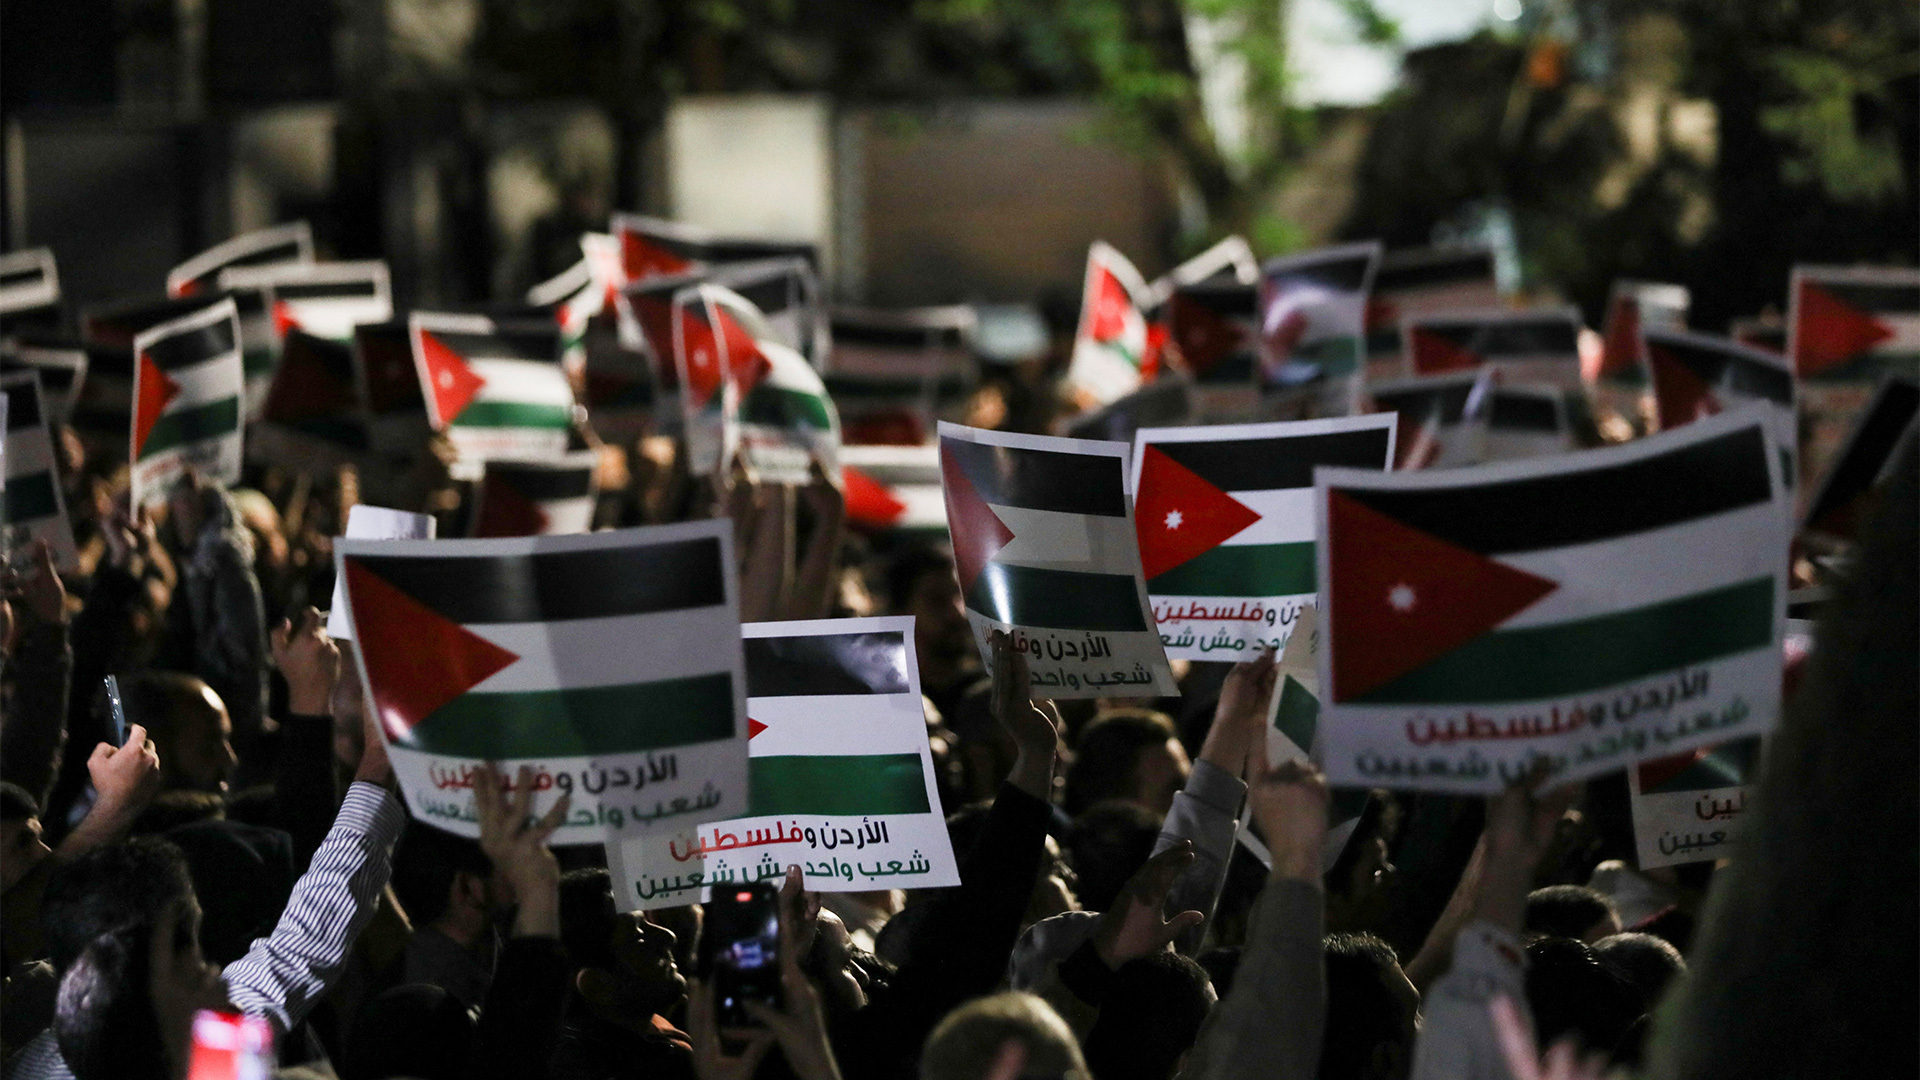 متظاهرون أردنيون يطالبون حكومتهم بإلغاء اتفاقية السلام بين الأردن وإسرائيل | التقارير الإخبارية – البوكس نيوز